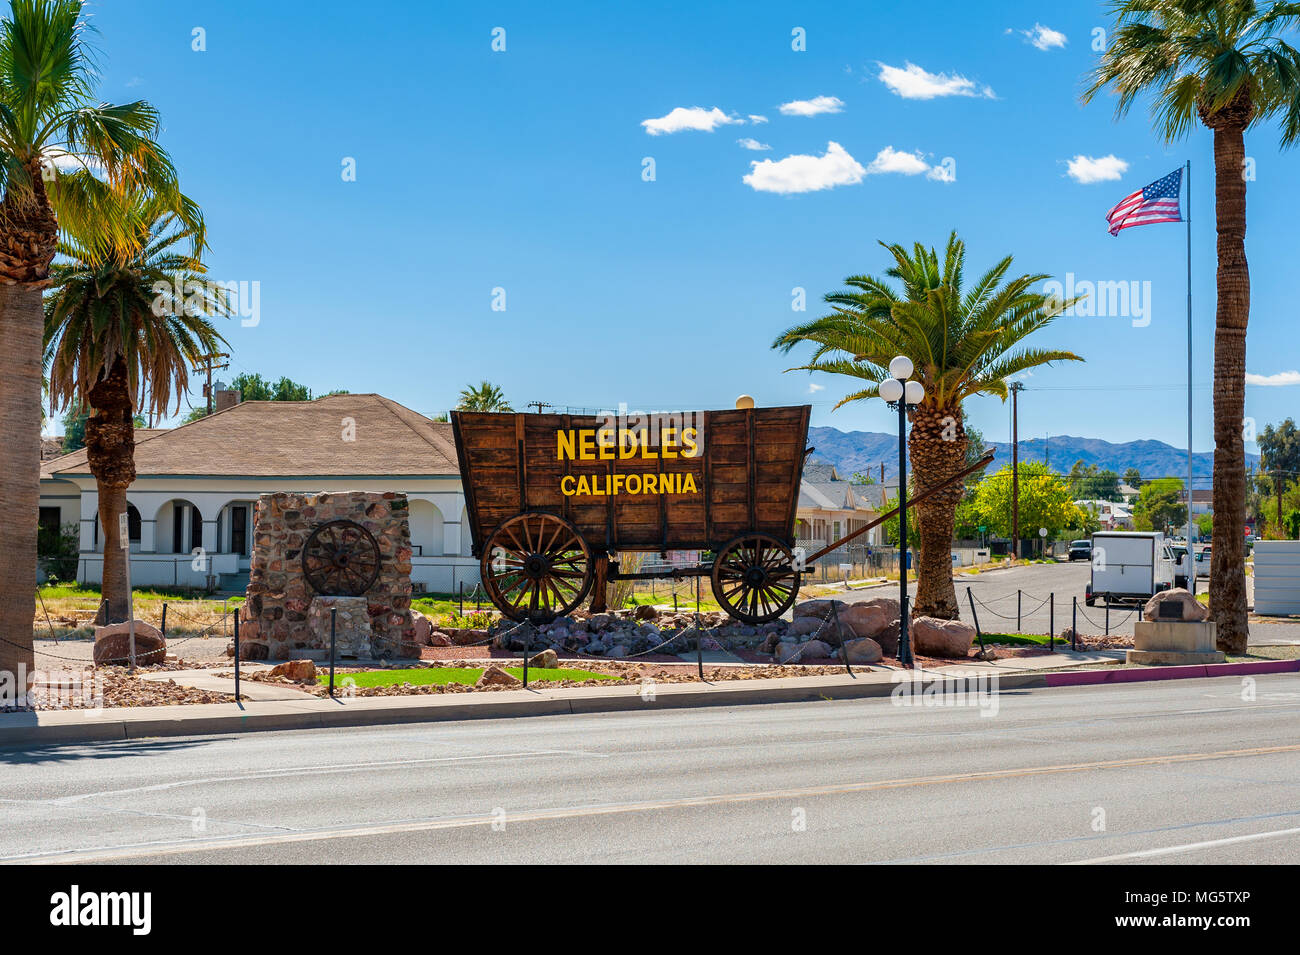 Agujas es una ciudad en el condado de San Bernardino, California, Estados Unidos. Se encuentra cerca de las fronteras de Arizona y Nevada y tiene una población de alrededor de 4.800 personas. Foto de stock